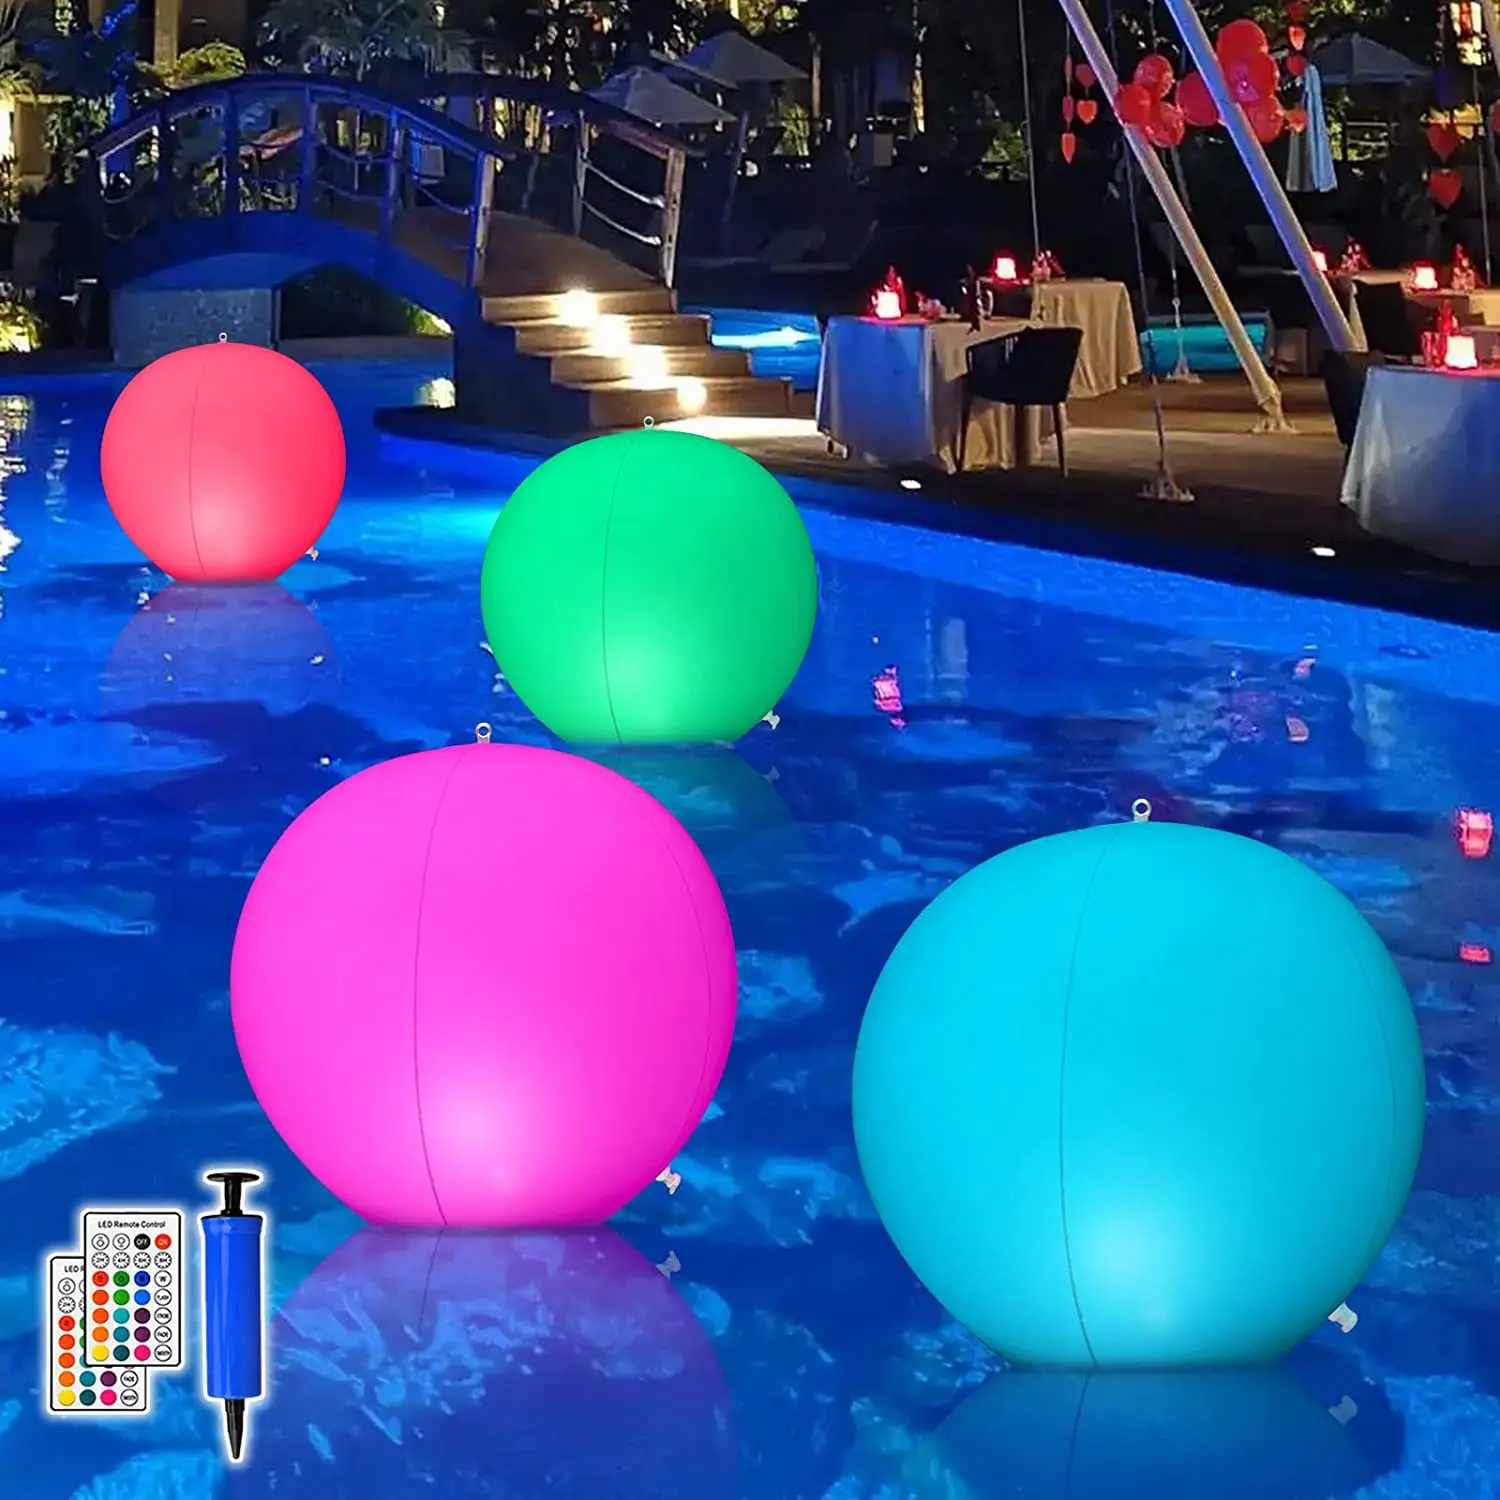 40/60 см Светящийся пляжный мяч с дистанционным управлением, ПВХ Светодиодный плавающий мяч для бассейна, 16 светлых цветов с надувным устройством, складной для игры на вечеринке у бассейна